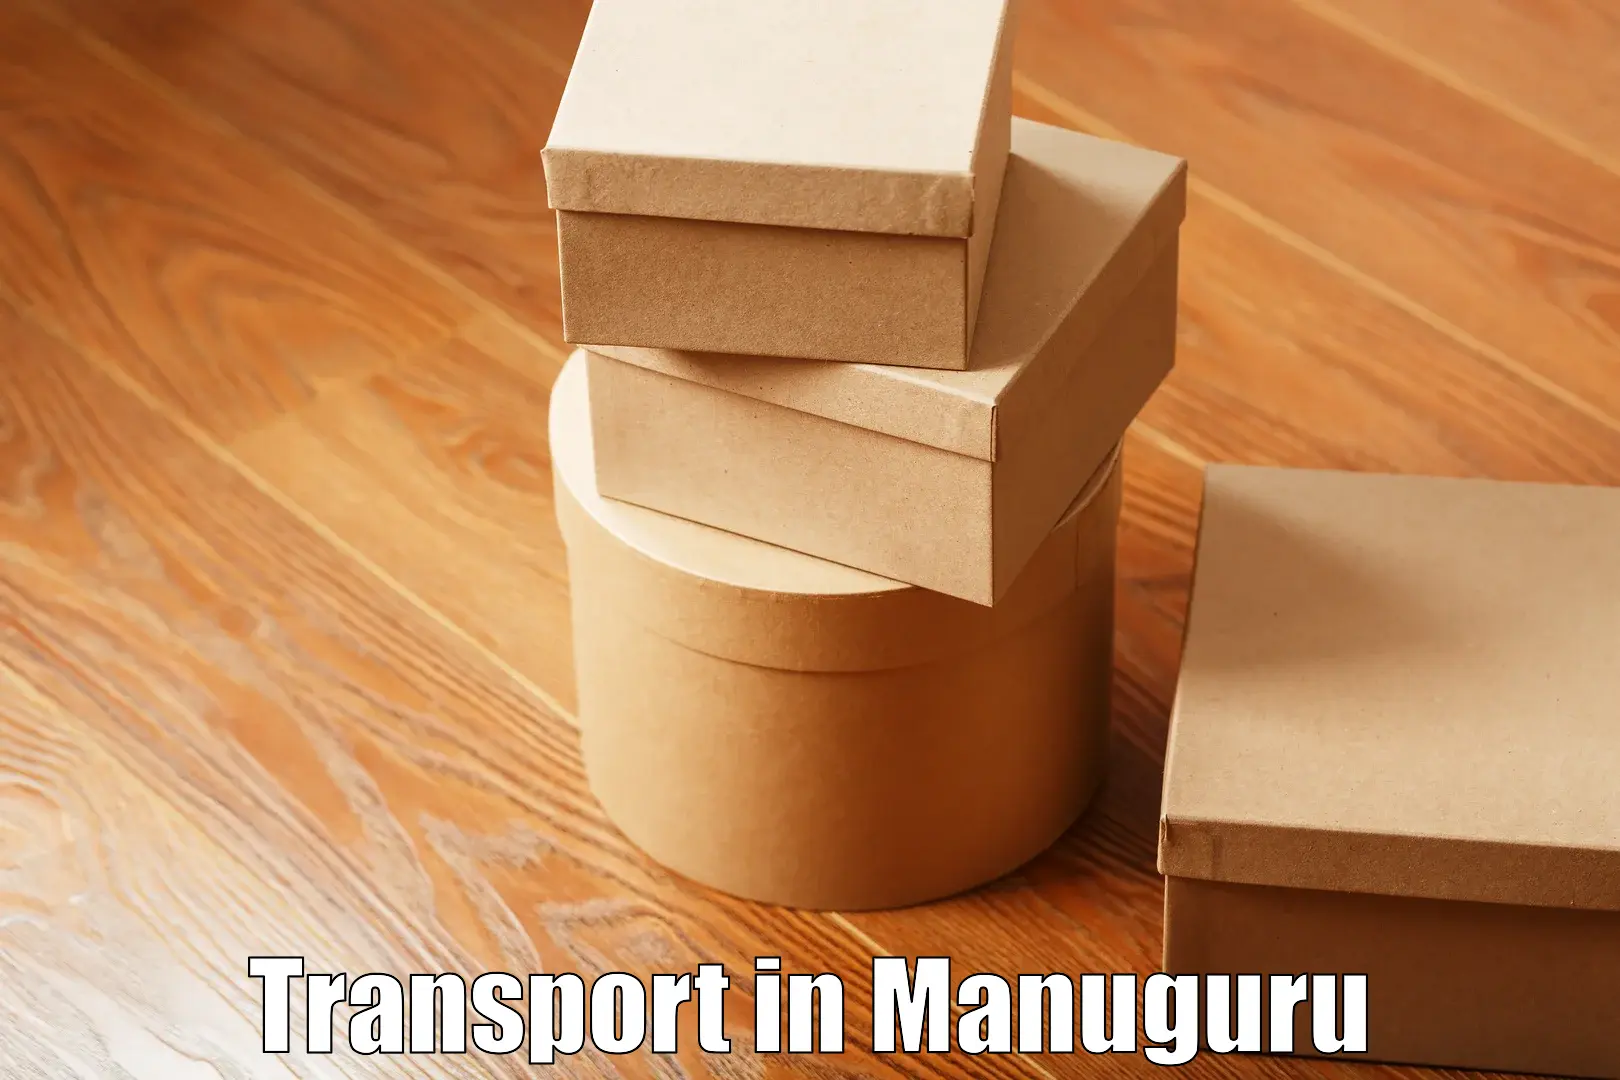 Intercity transport in Manuguru